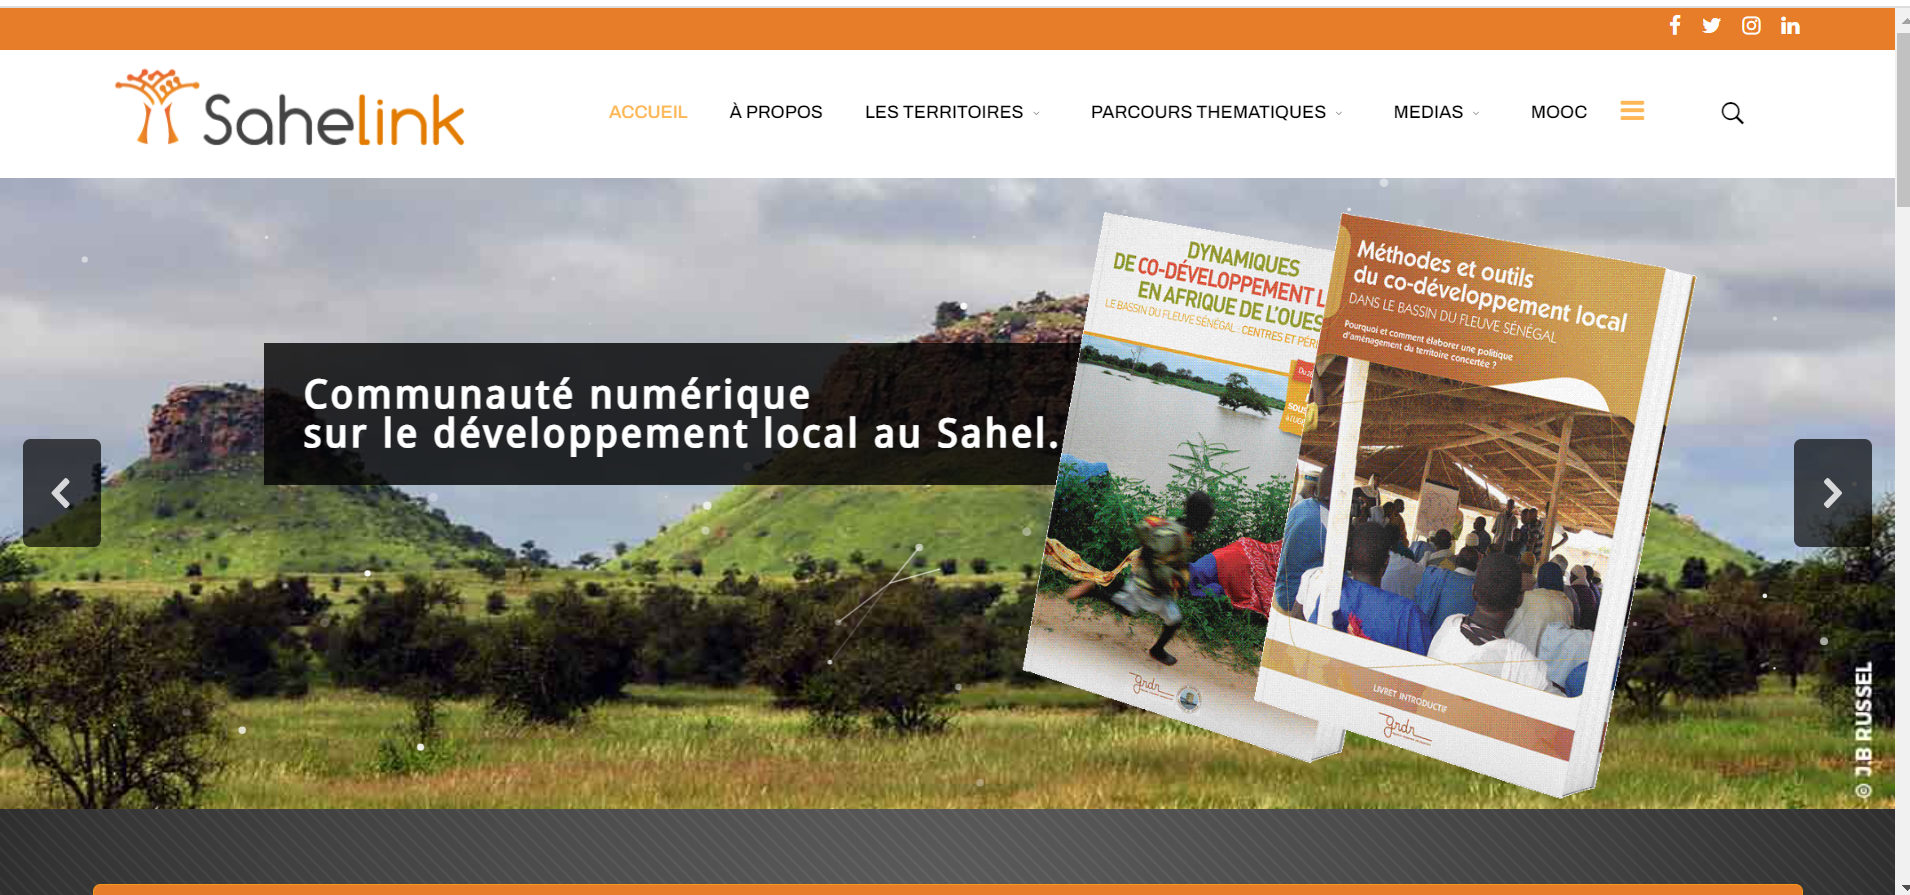 Miniature Sahelink : Une communauté numérique des acteurs du développement local au Sahel